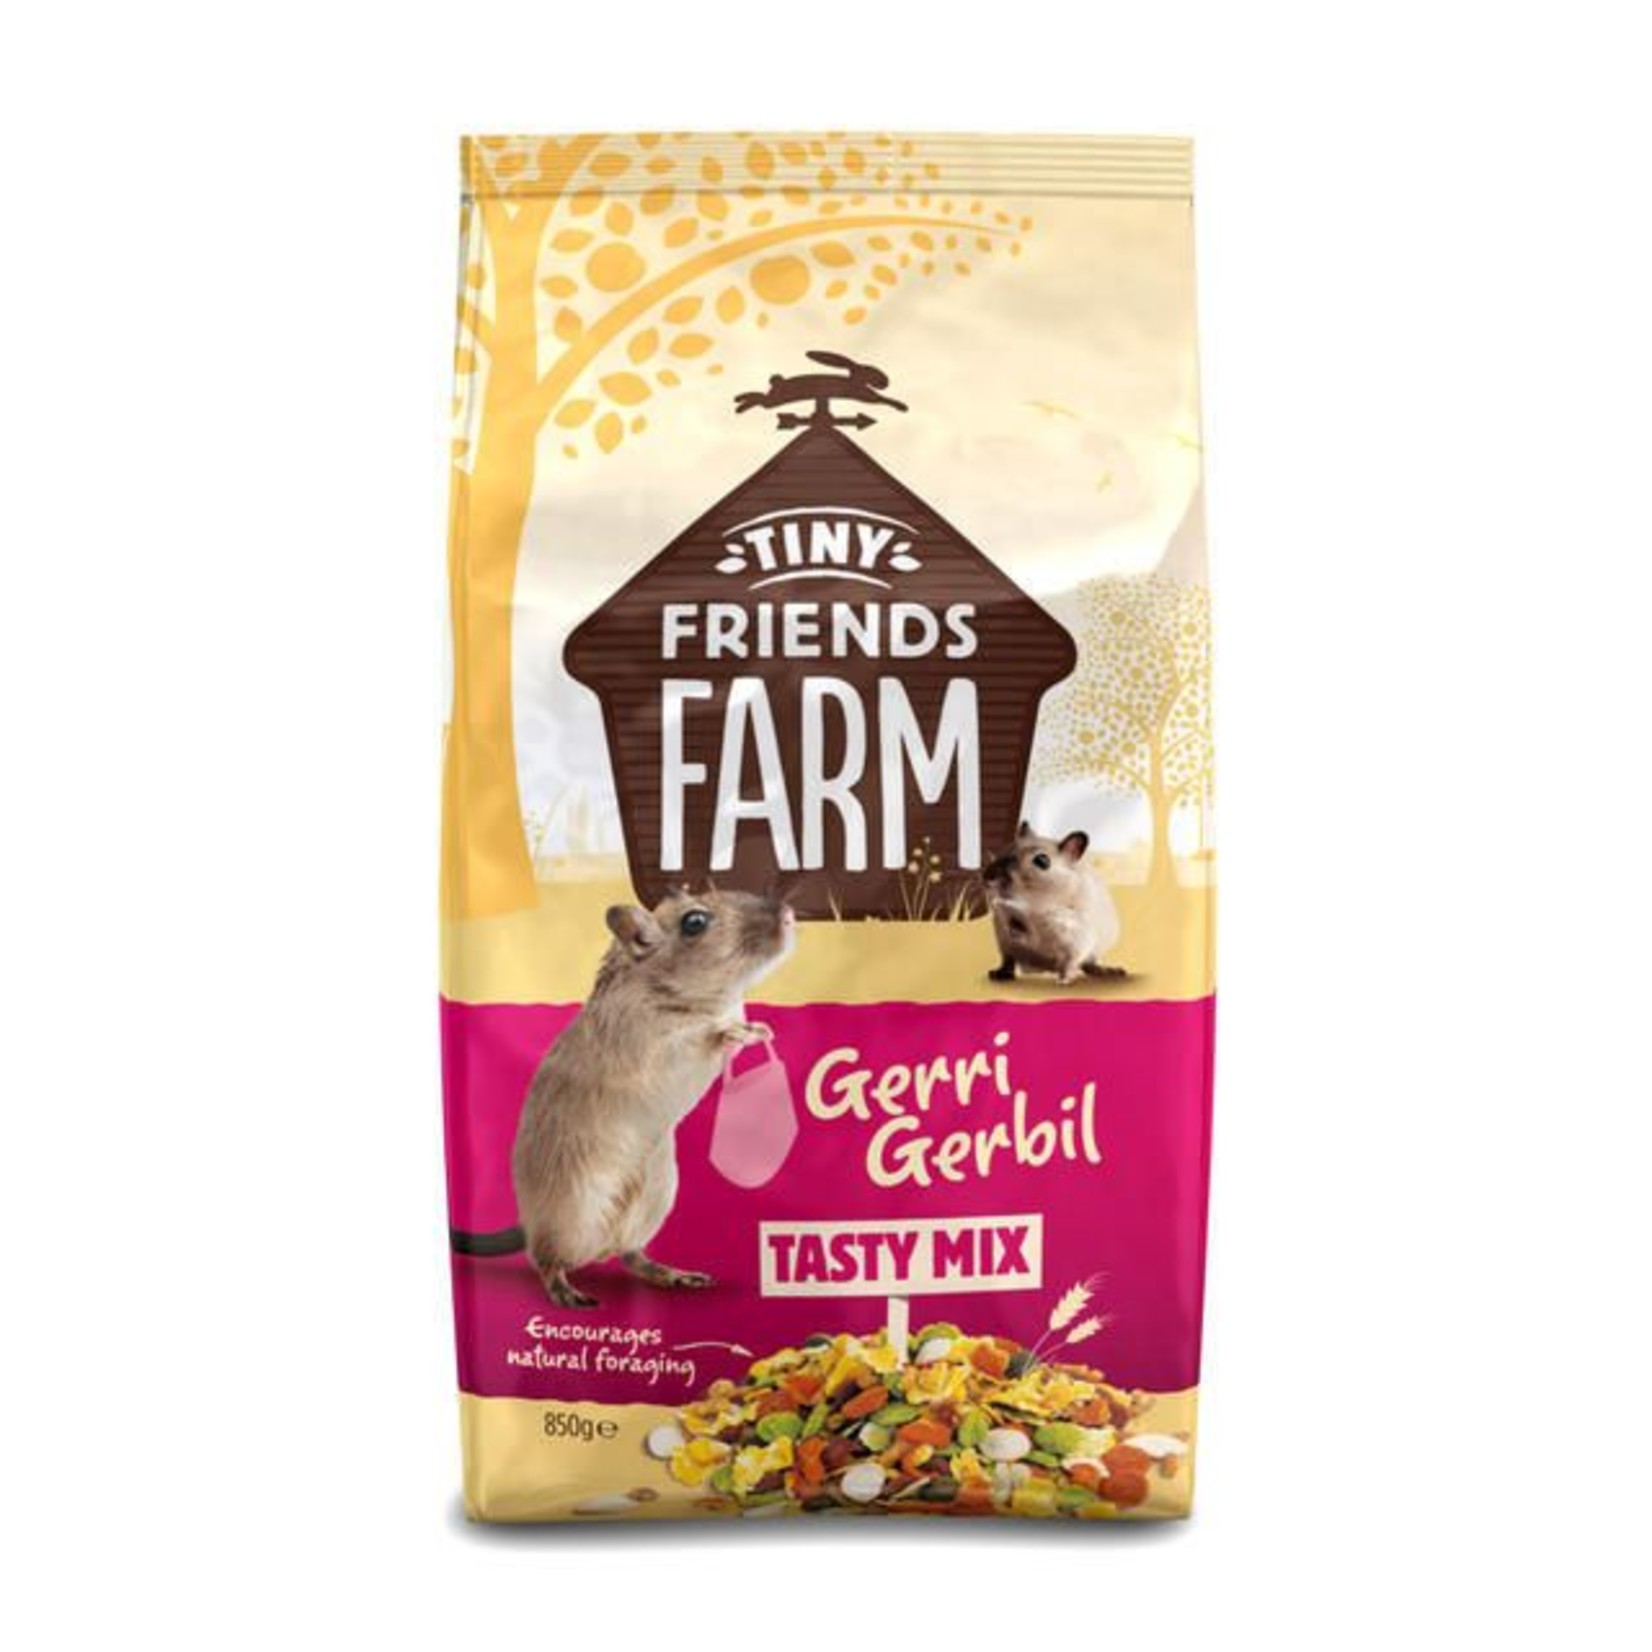 Supreme Tiny Friends Farm Gerri Gerbil Tasty Mix Food, 850g